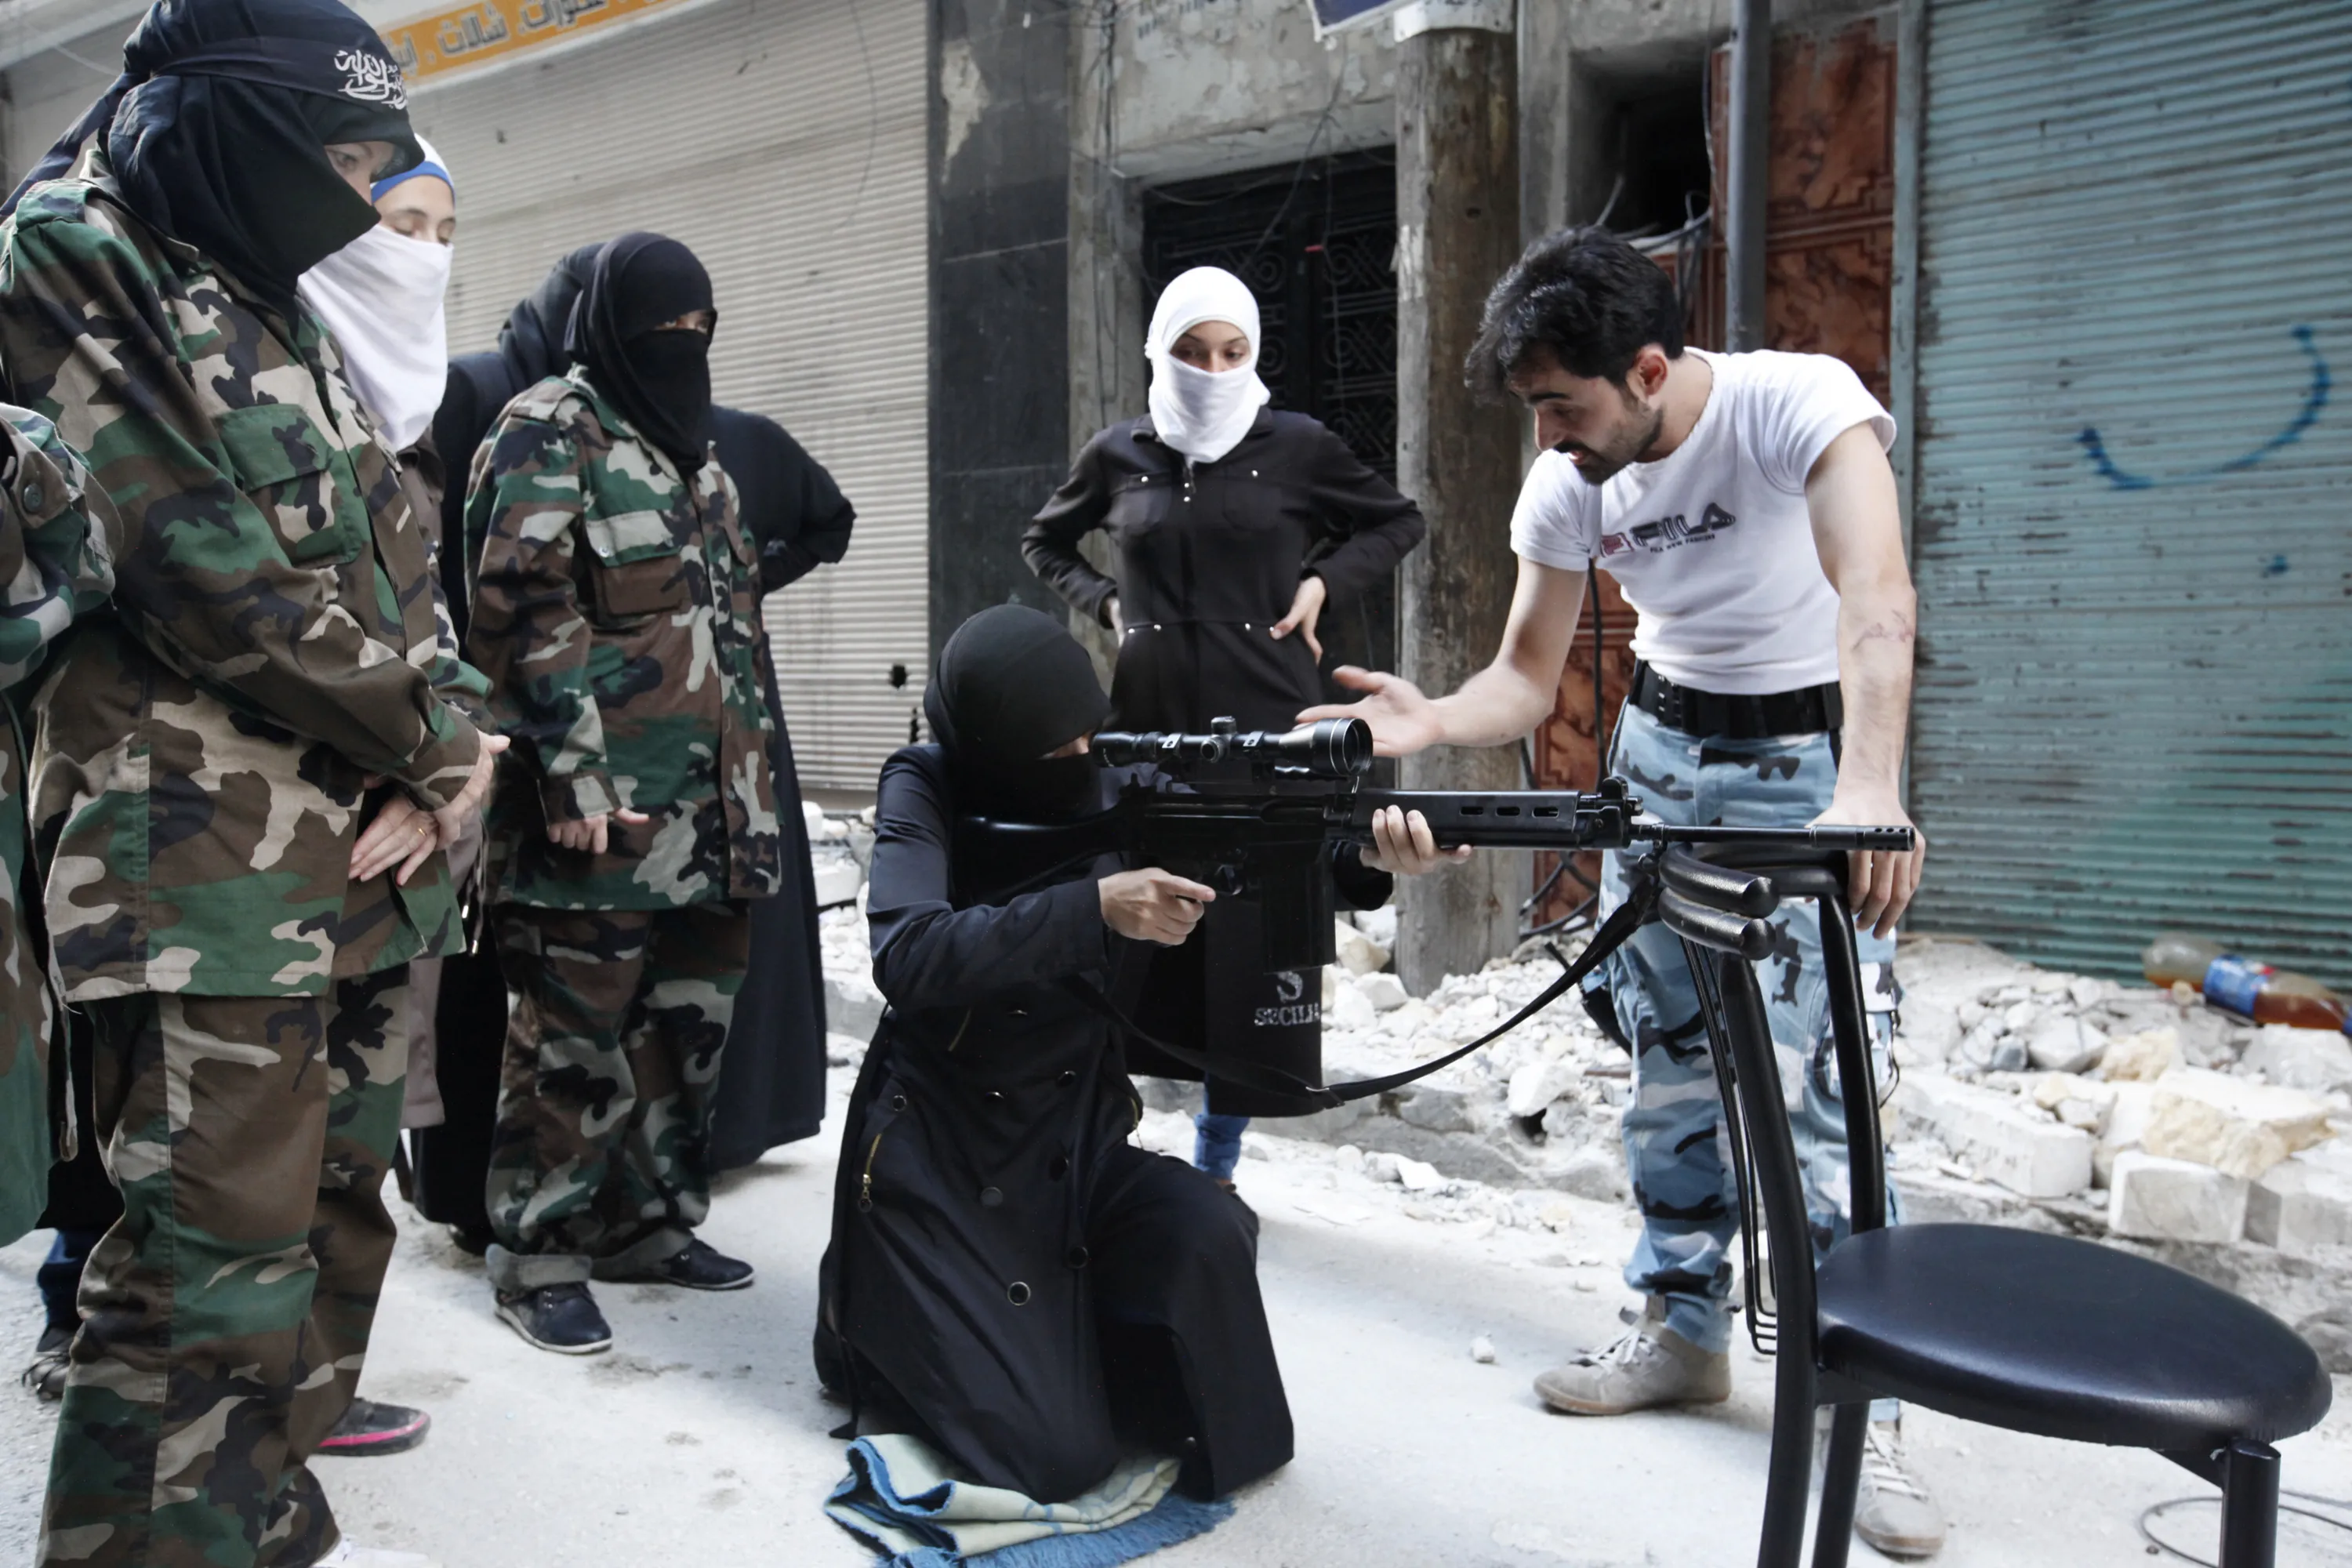 Фото игиловцев. Террористическая группировка «Исламское государство» в Сирии. Мусульманские террористы. Исламская террористка.